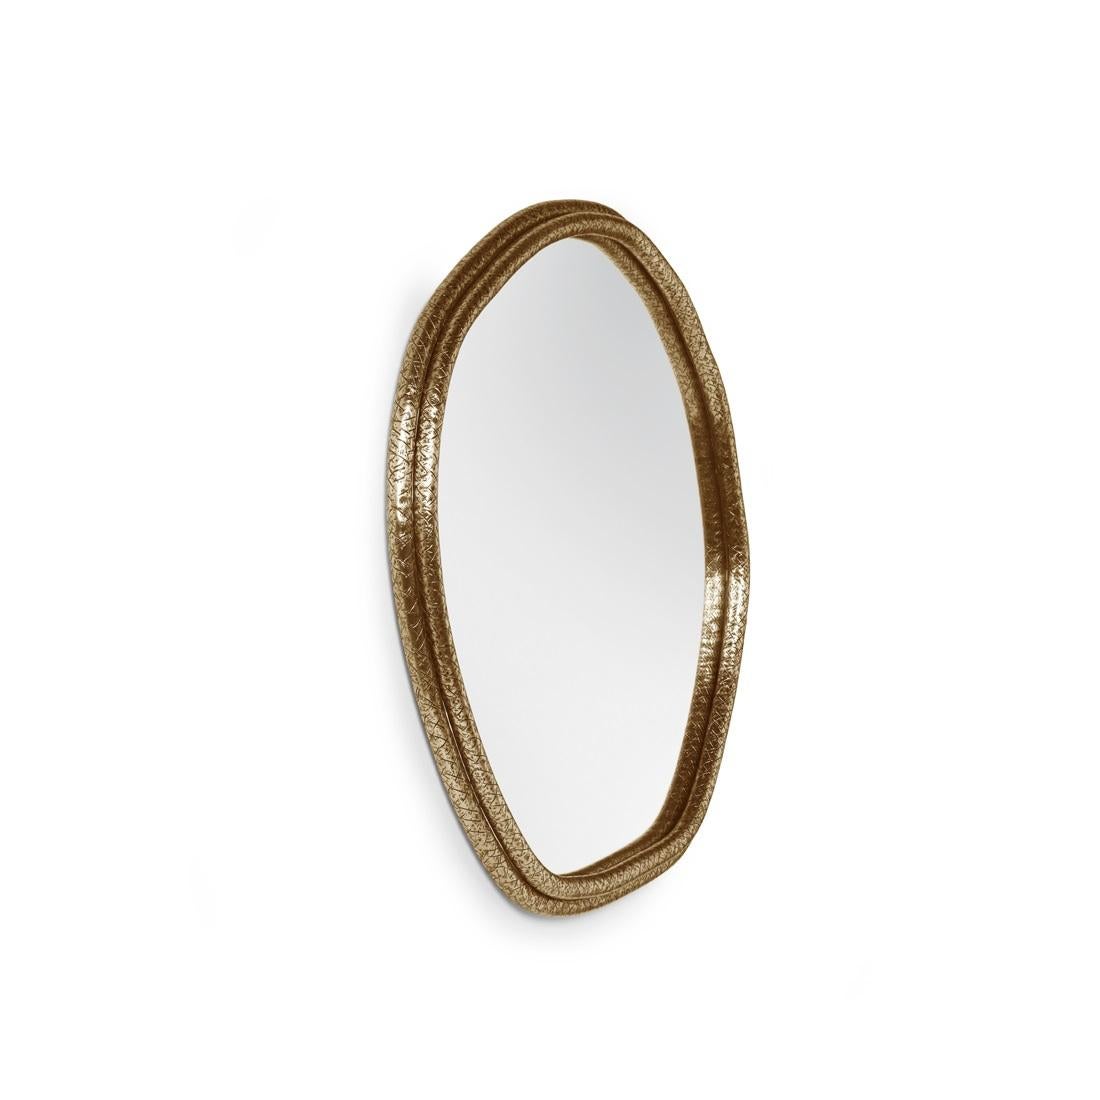 Les arcs de ce miroir sont martelés à la main en laiton, en forme de tronc d'arbre. Le miroir représente ici le temps comme une forme plate quasi-elliptique, donc Everlast.
Cadre : Laiton, nickel ou cuivre en finition martelée dentelée.
Miroir :